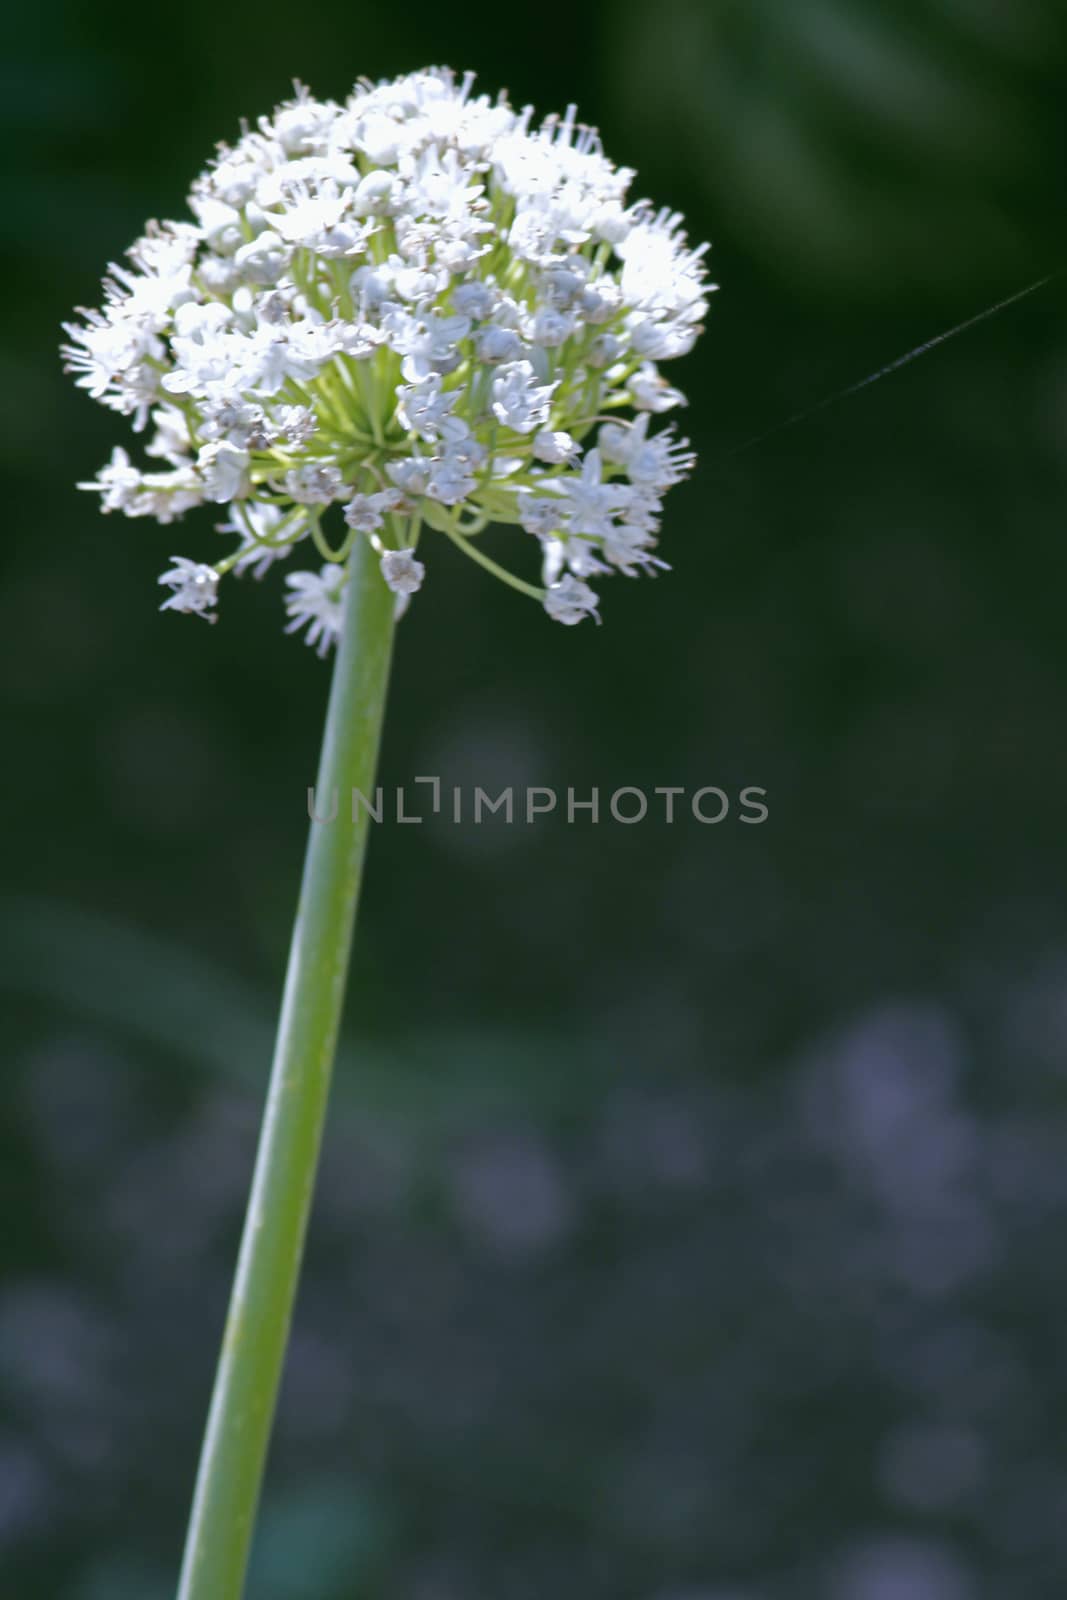 Flower of Onion, Allium cepa by yands